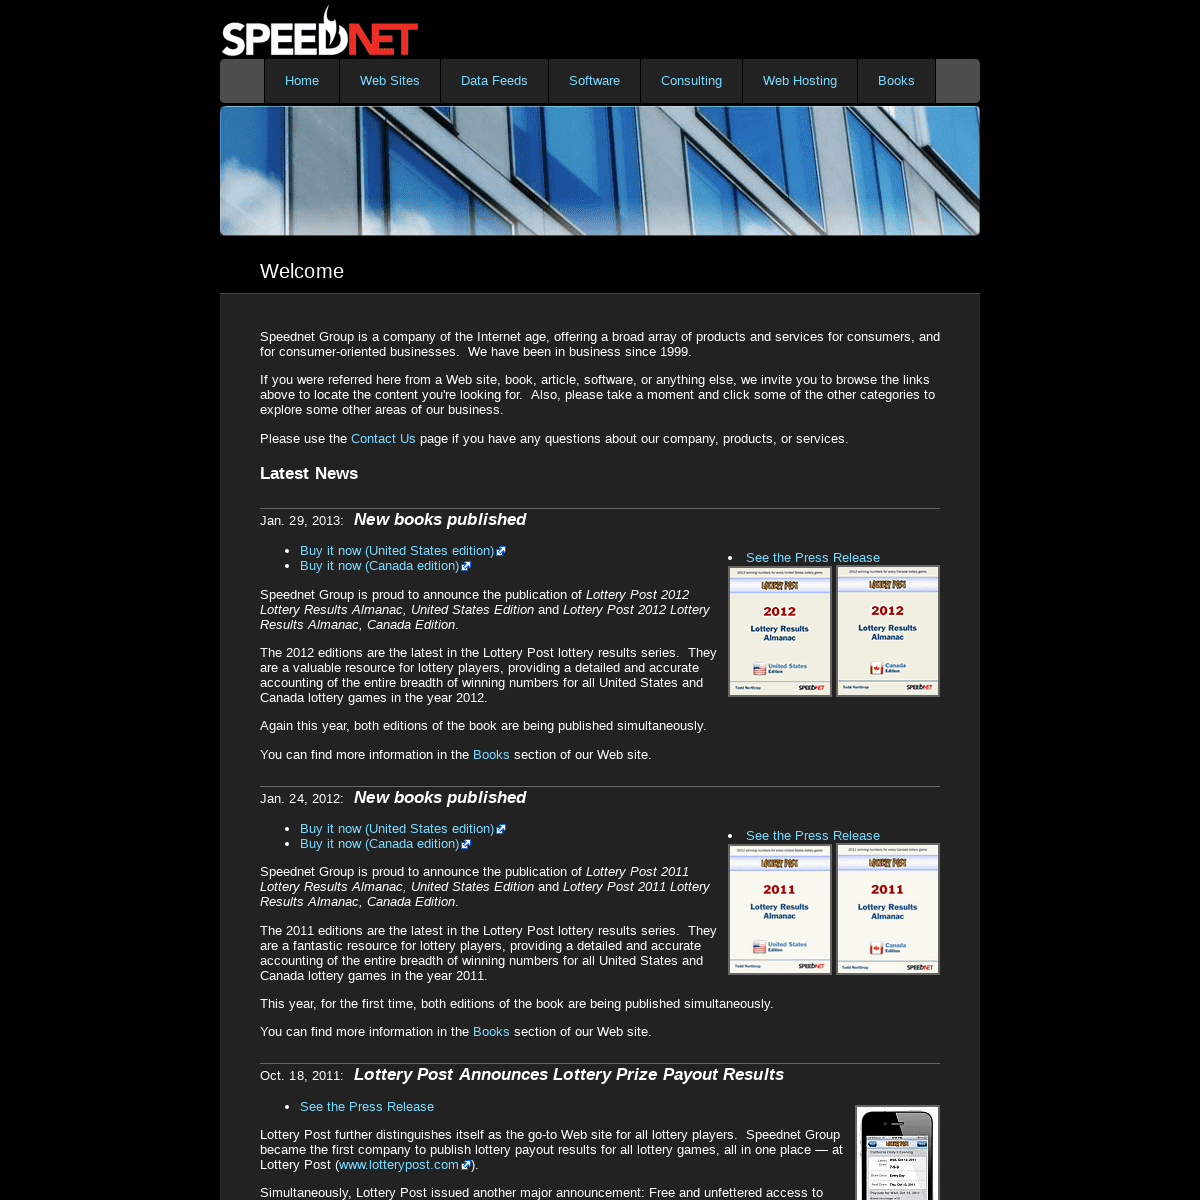 Speednet Group